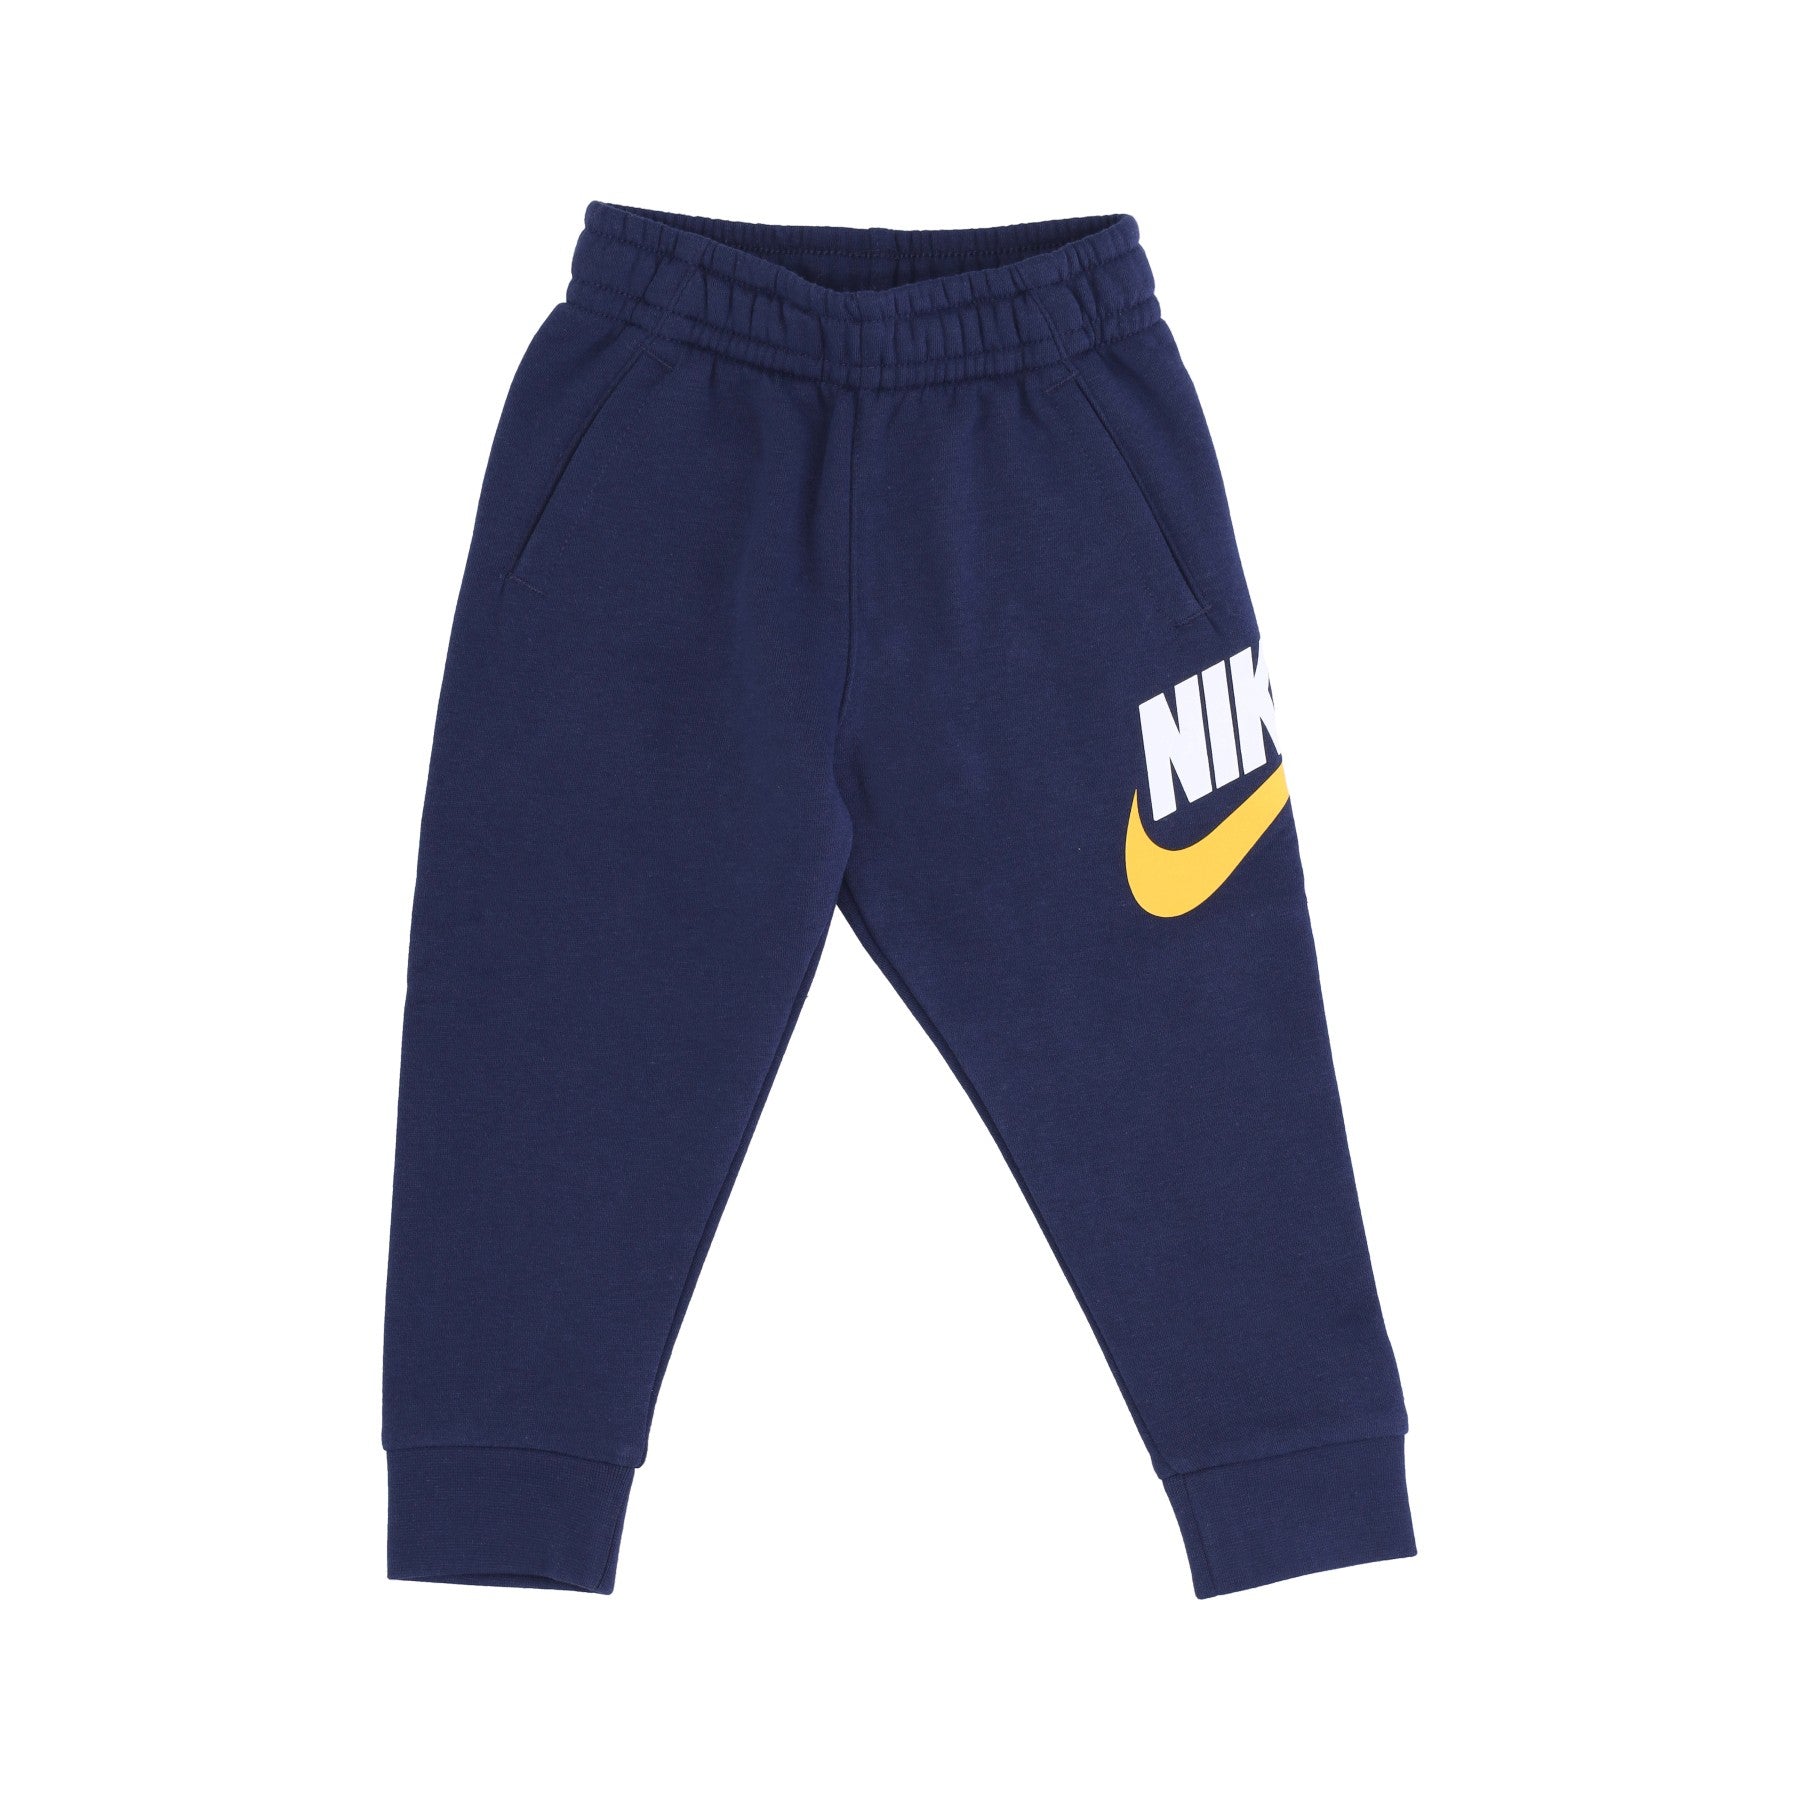 Nike, Pantalone Tuta Felpato Bambino Club Hbr Jogger, Midnight Navy